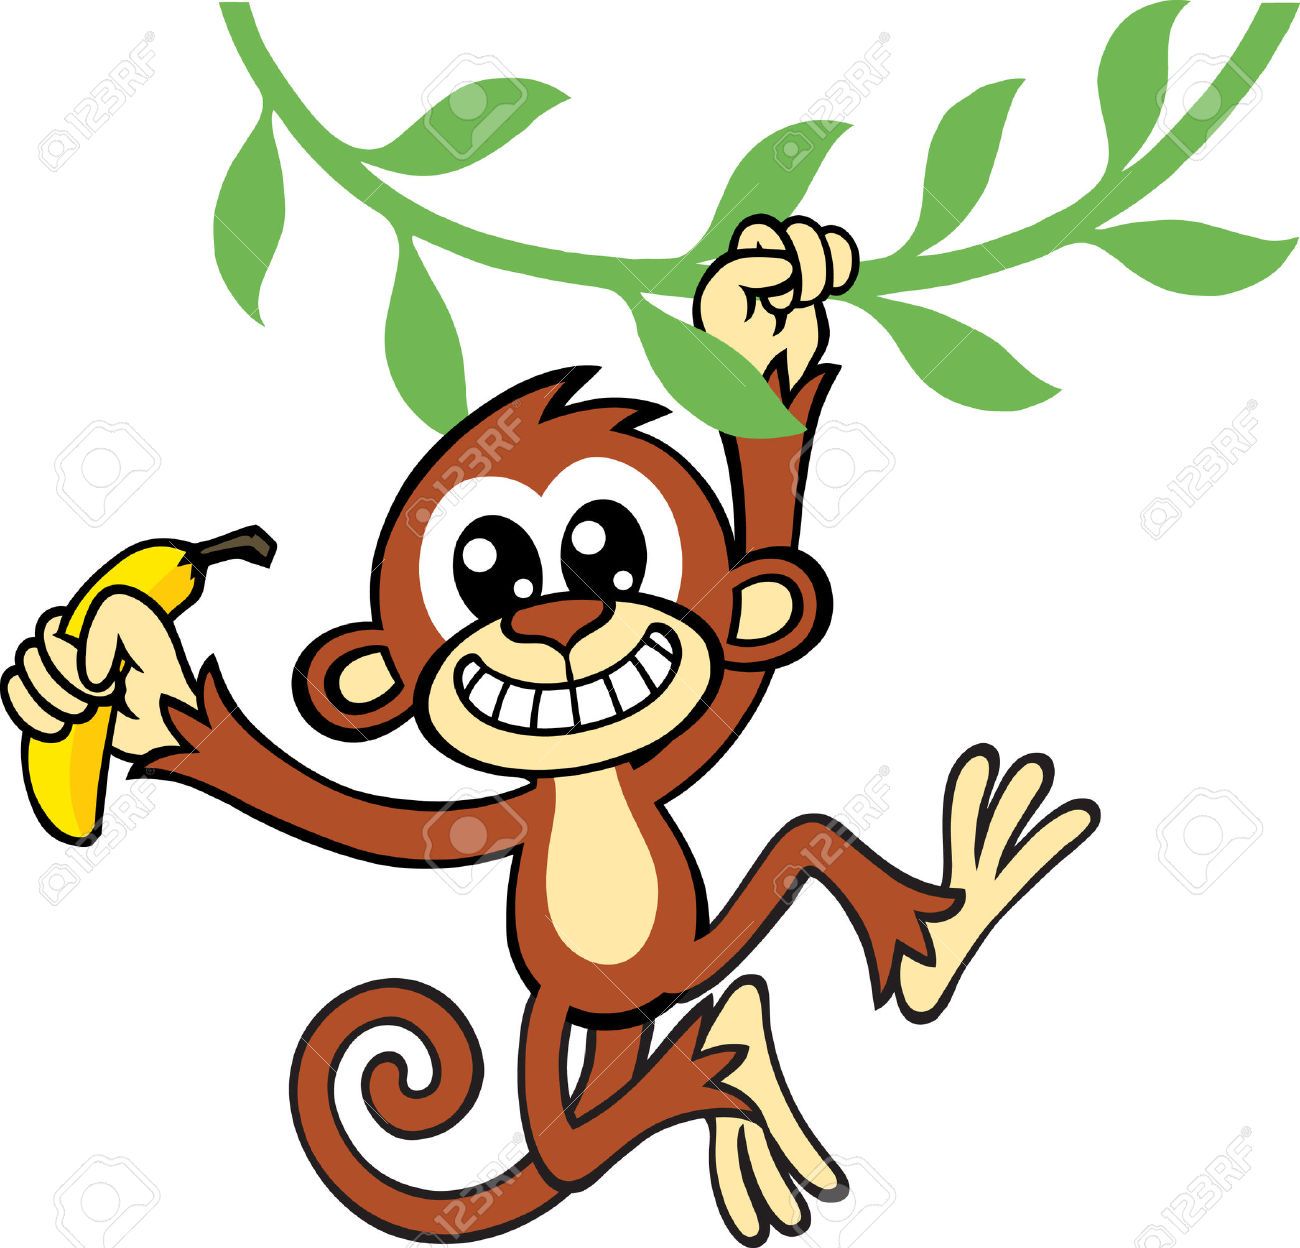 monkeys clipart vine